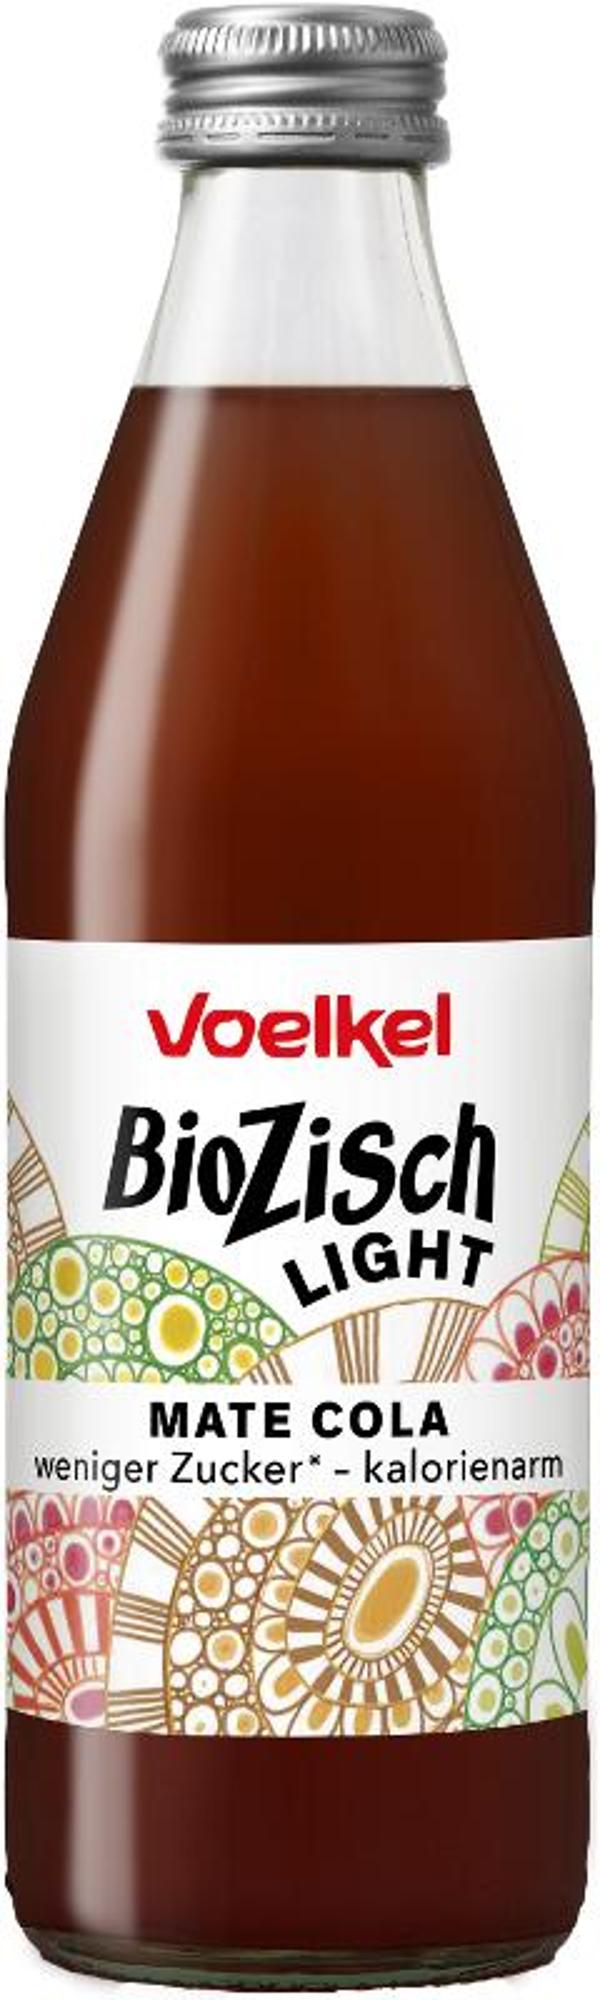 Produktfoto zu BioZisch Light Mate Cola